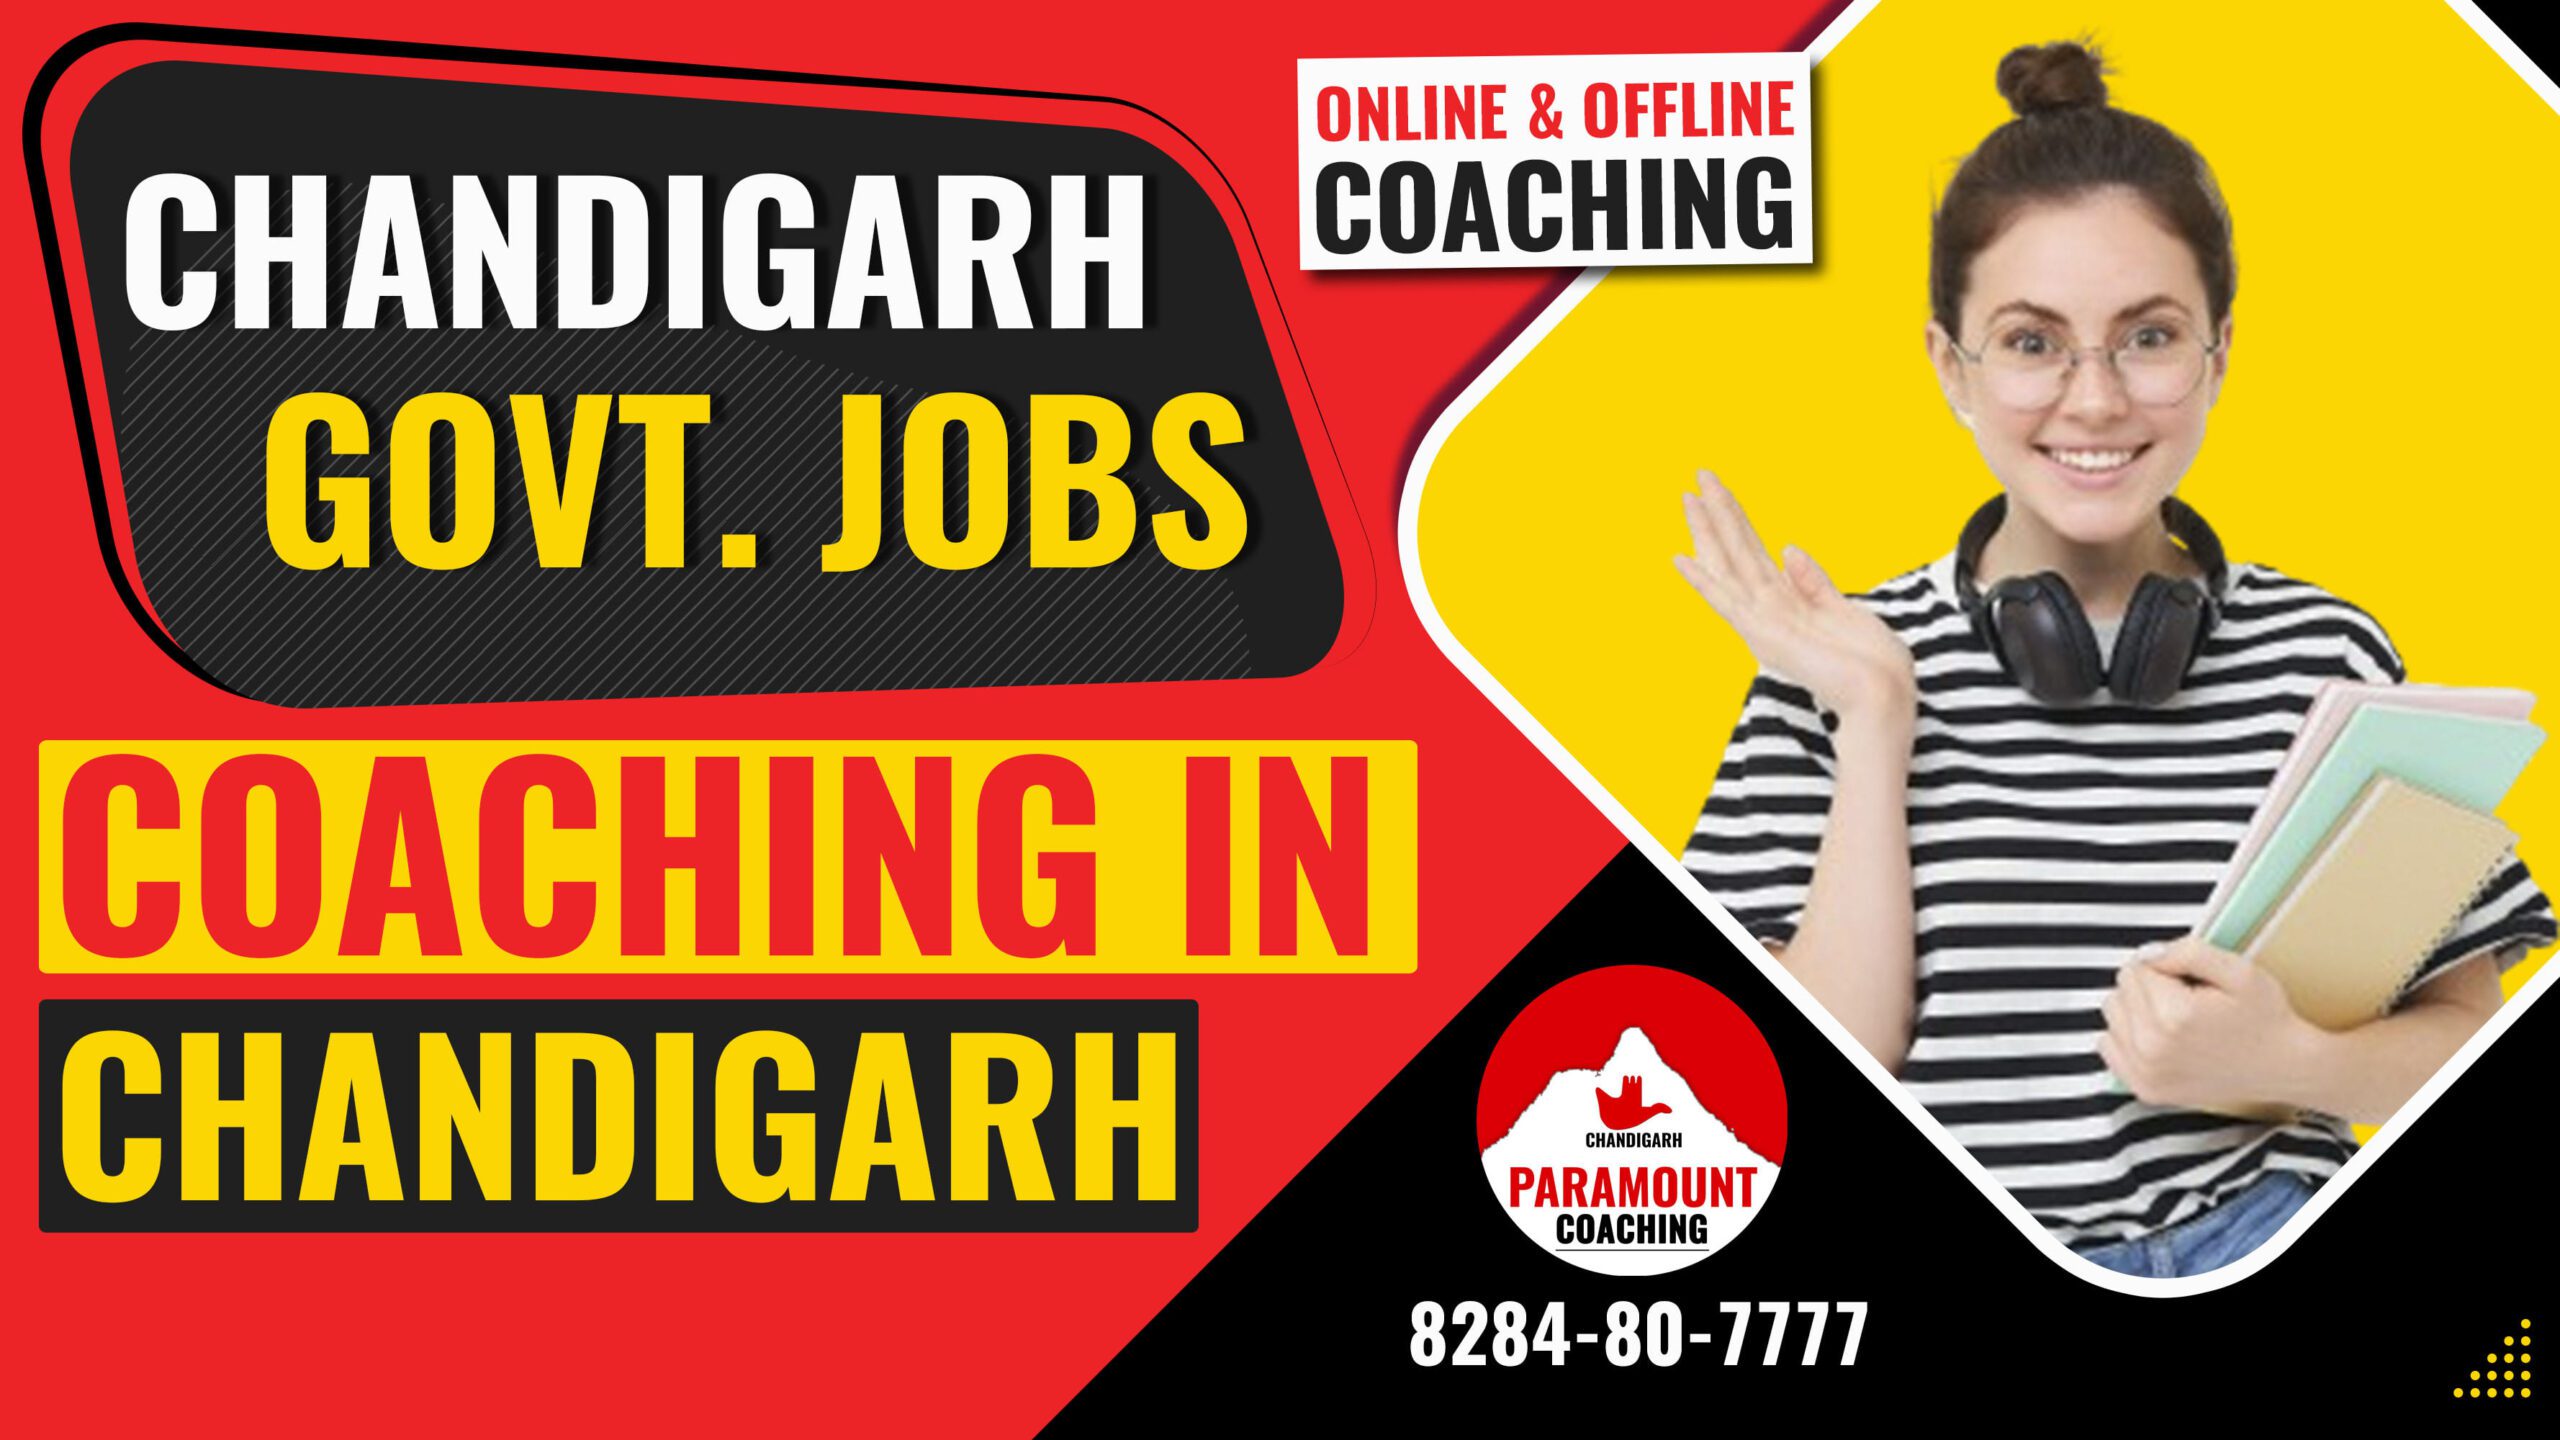 Chandigarh govt jobs coaching in Chandigarh - Paramount Chandigarh